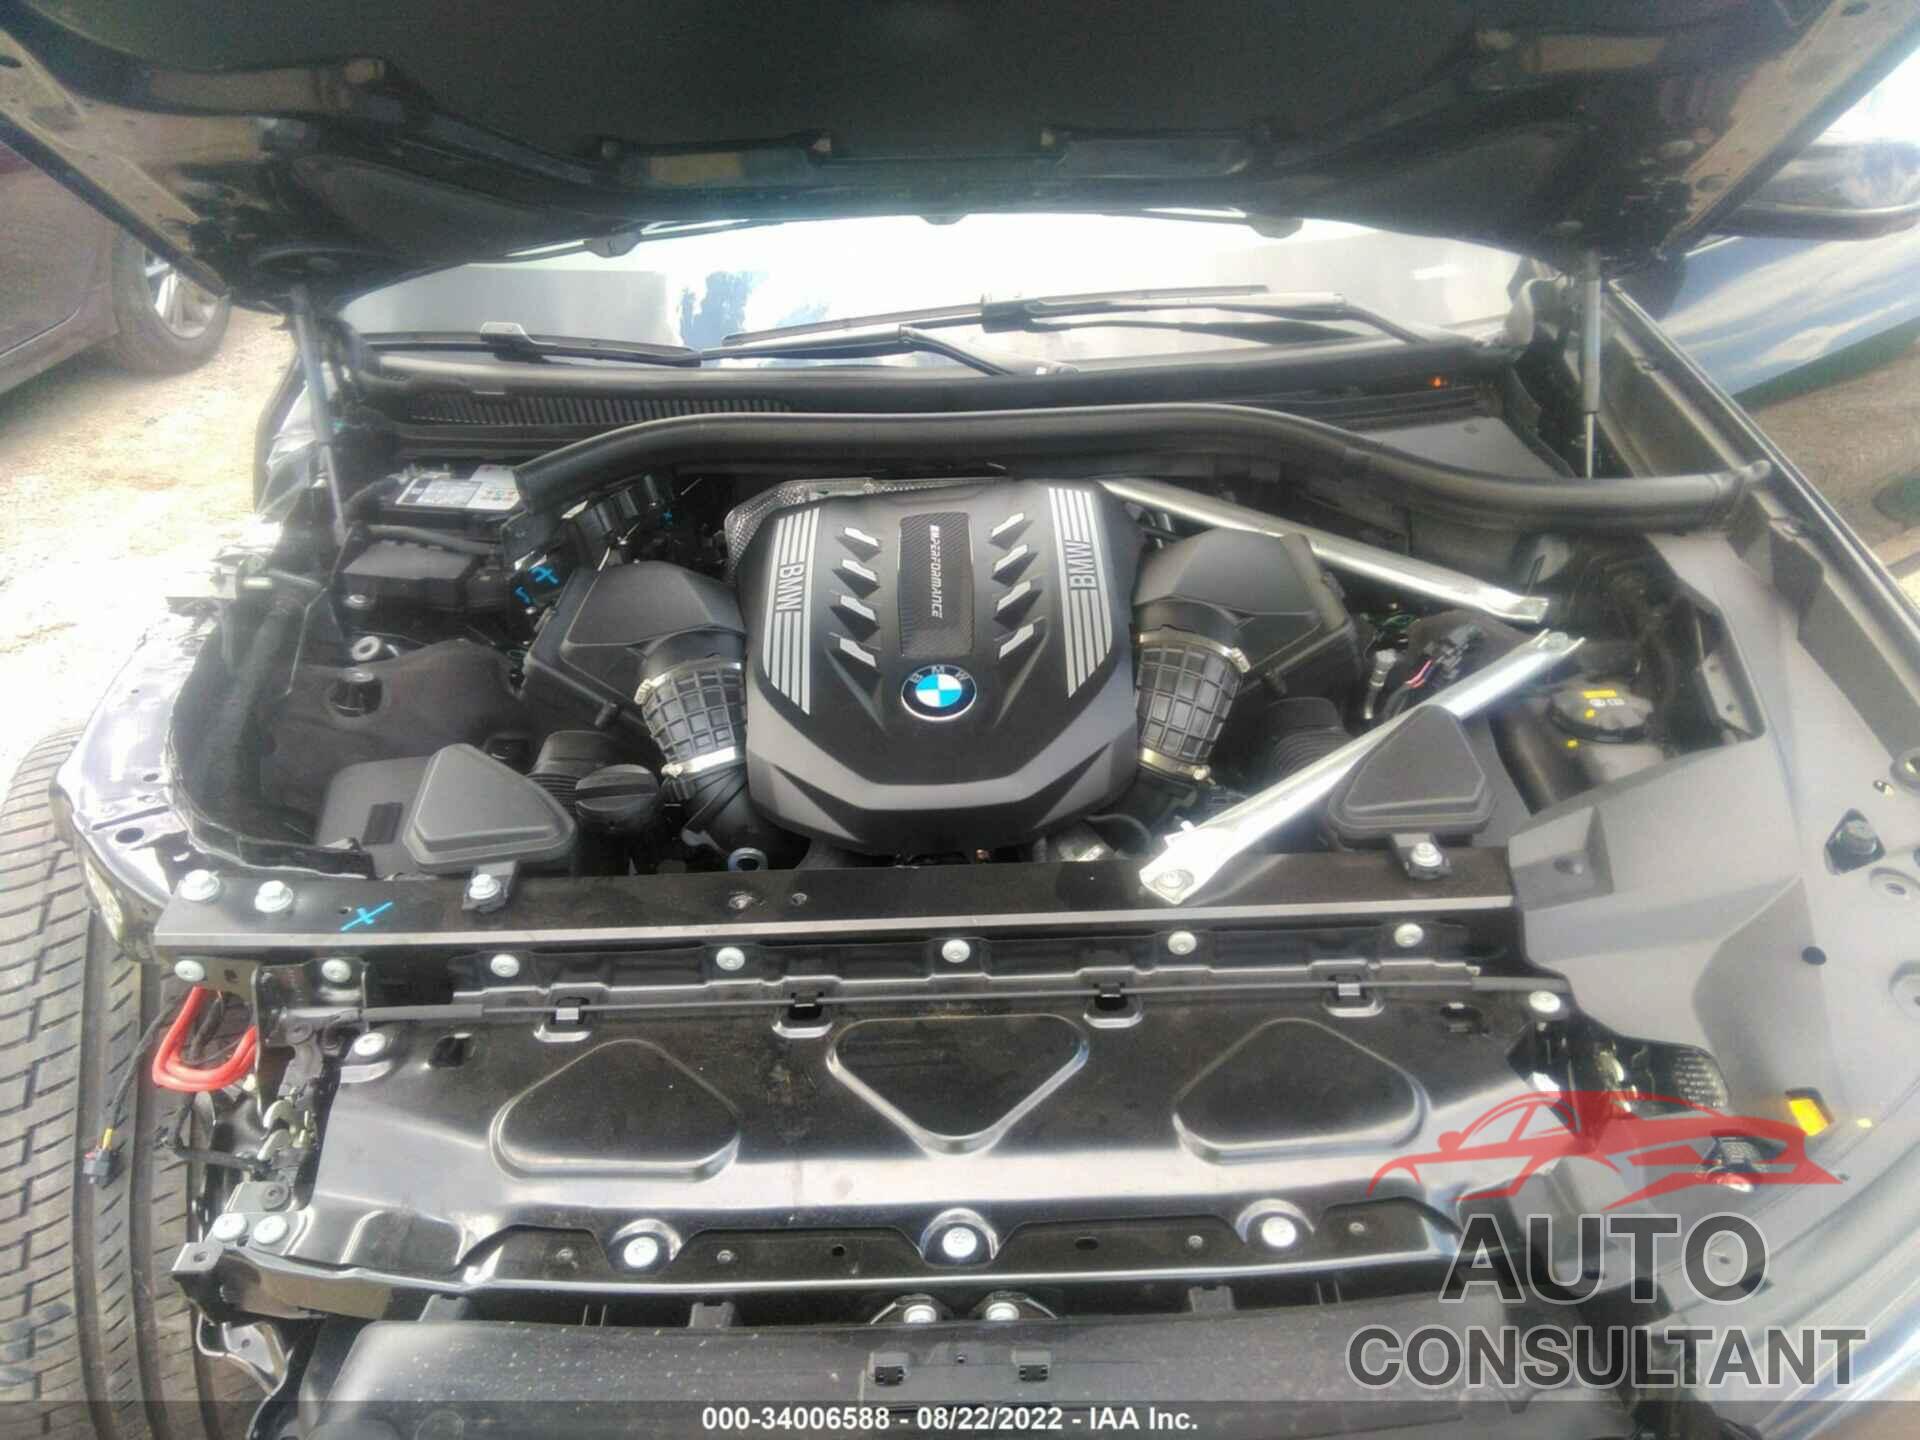 BMW X7 2022 - 5UXCX6C07N9M14336